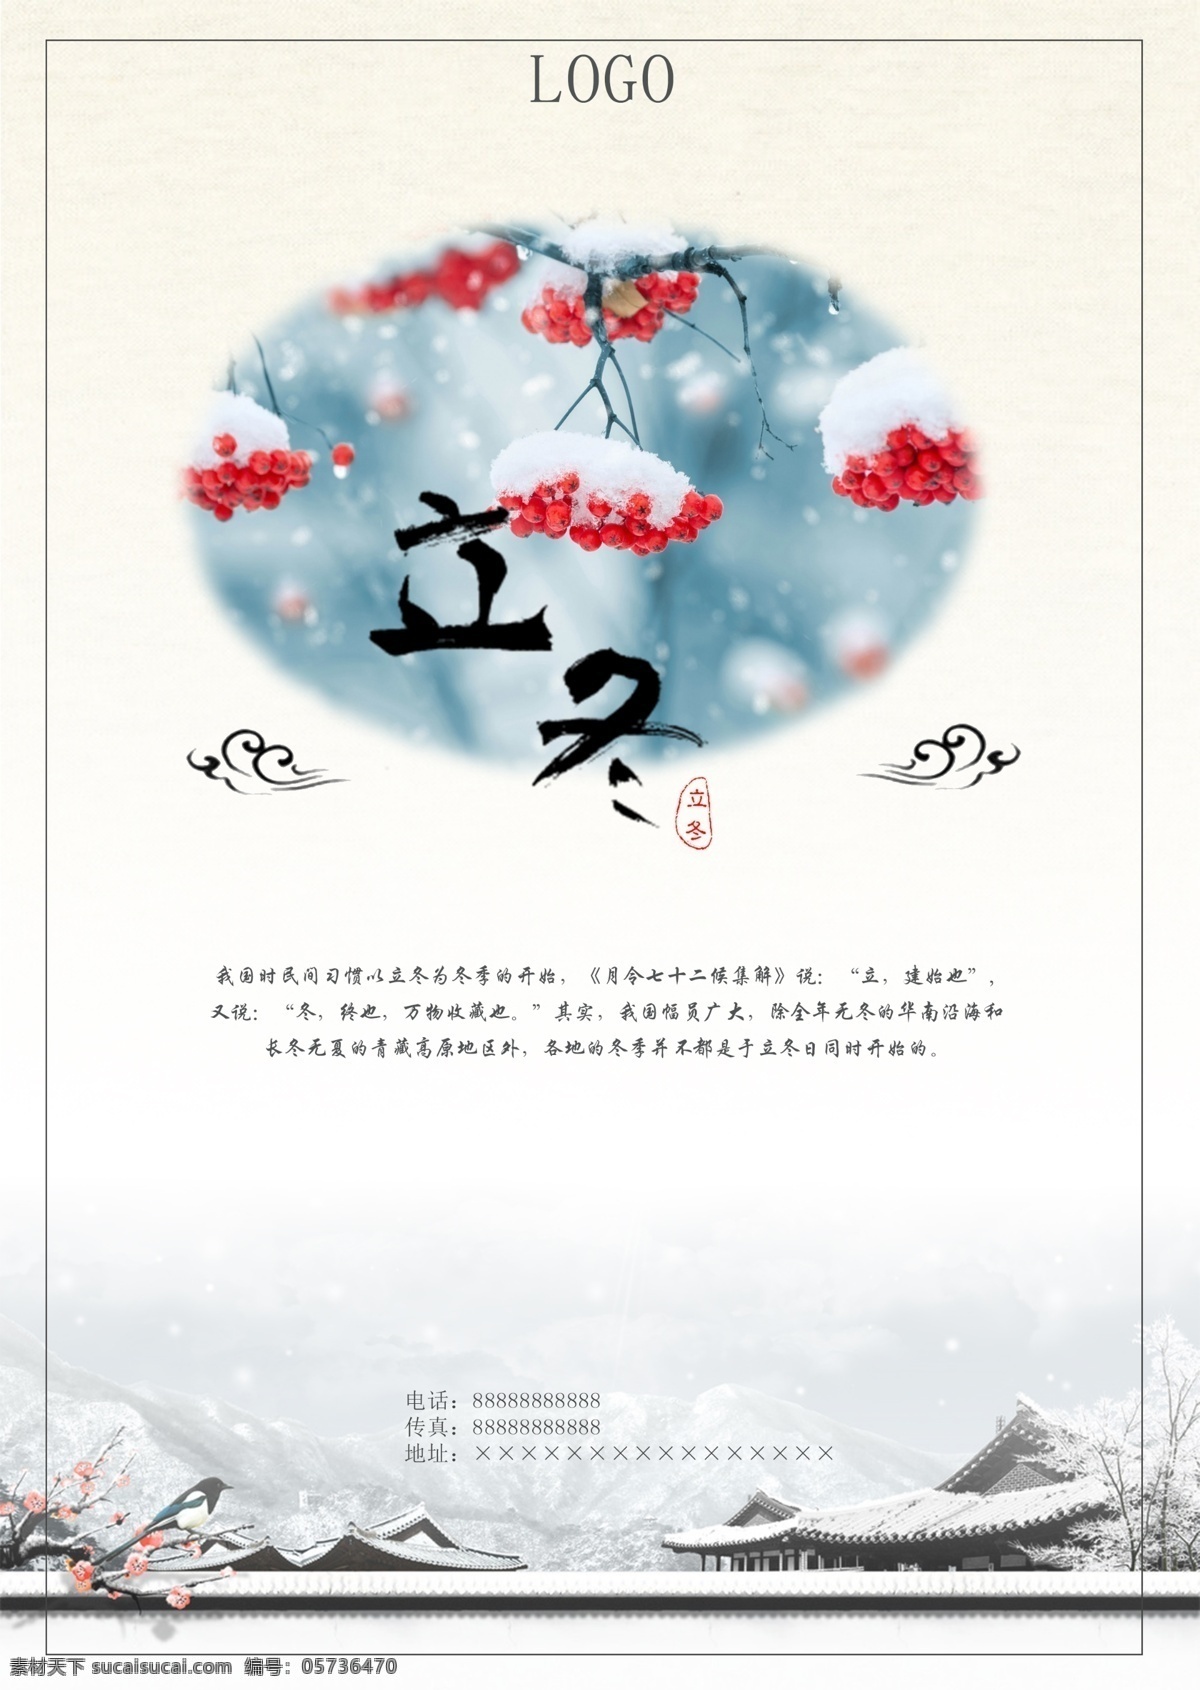 二十四节气 立冬 公司 宣传海报 节气 公司宣传 传统节气